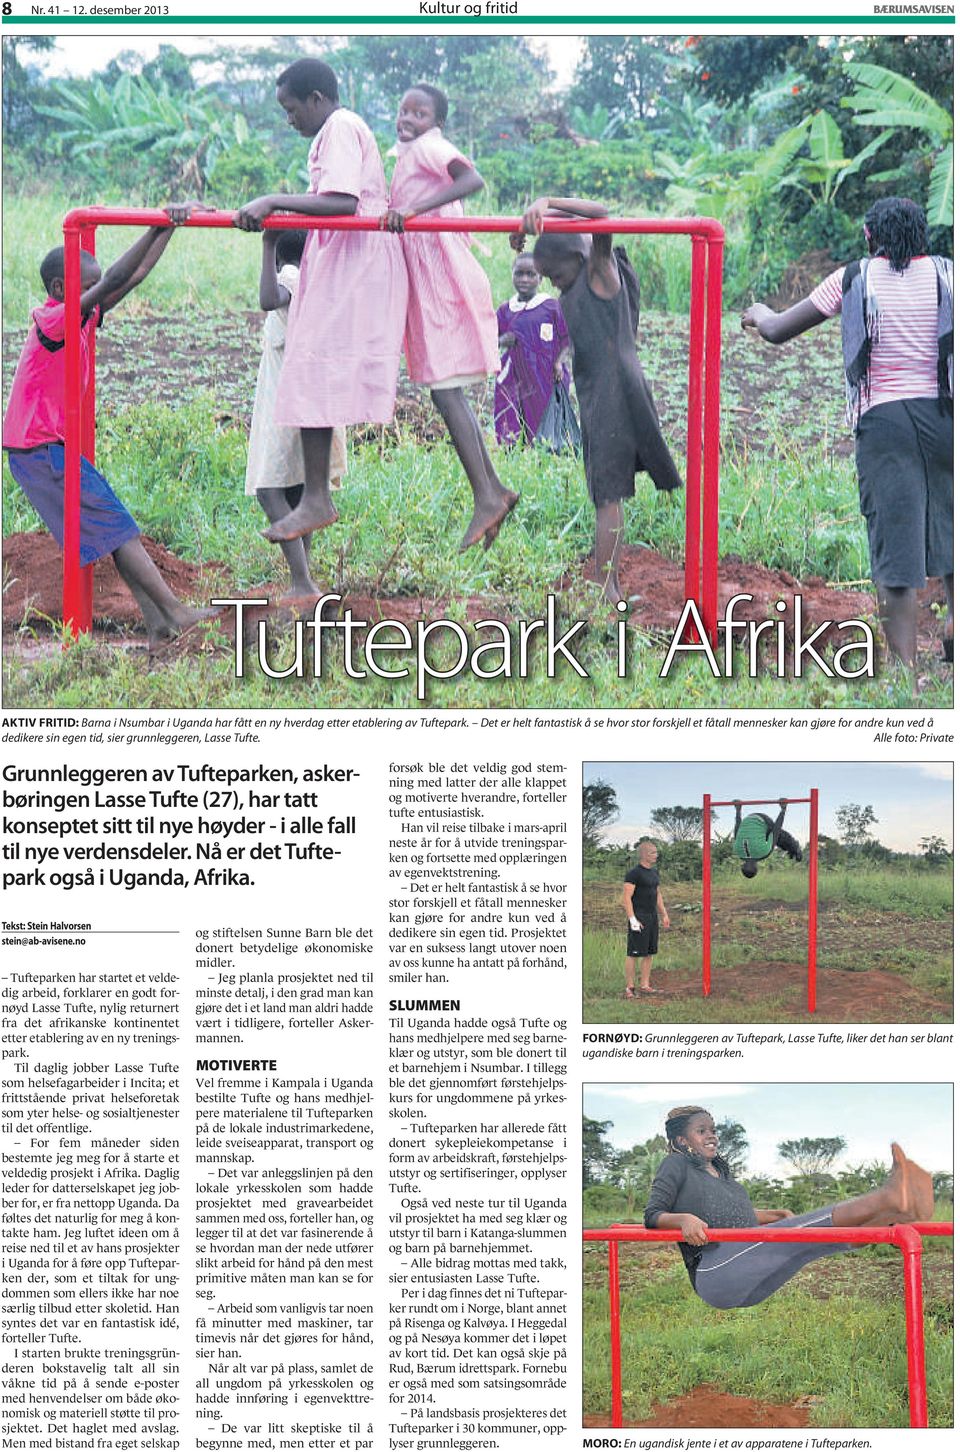 Alle foto: Private Grunnleggeren av Tufteparken, askerbøringen Lasse Tufte (27), har tatt konseptet sitt til nye høyder - i alle fall til nye verdensdeler. Nå er det Tuftepark også i Uganda, Afrika.